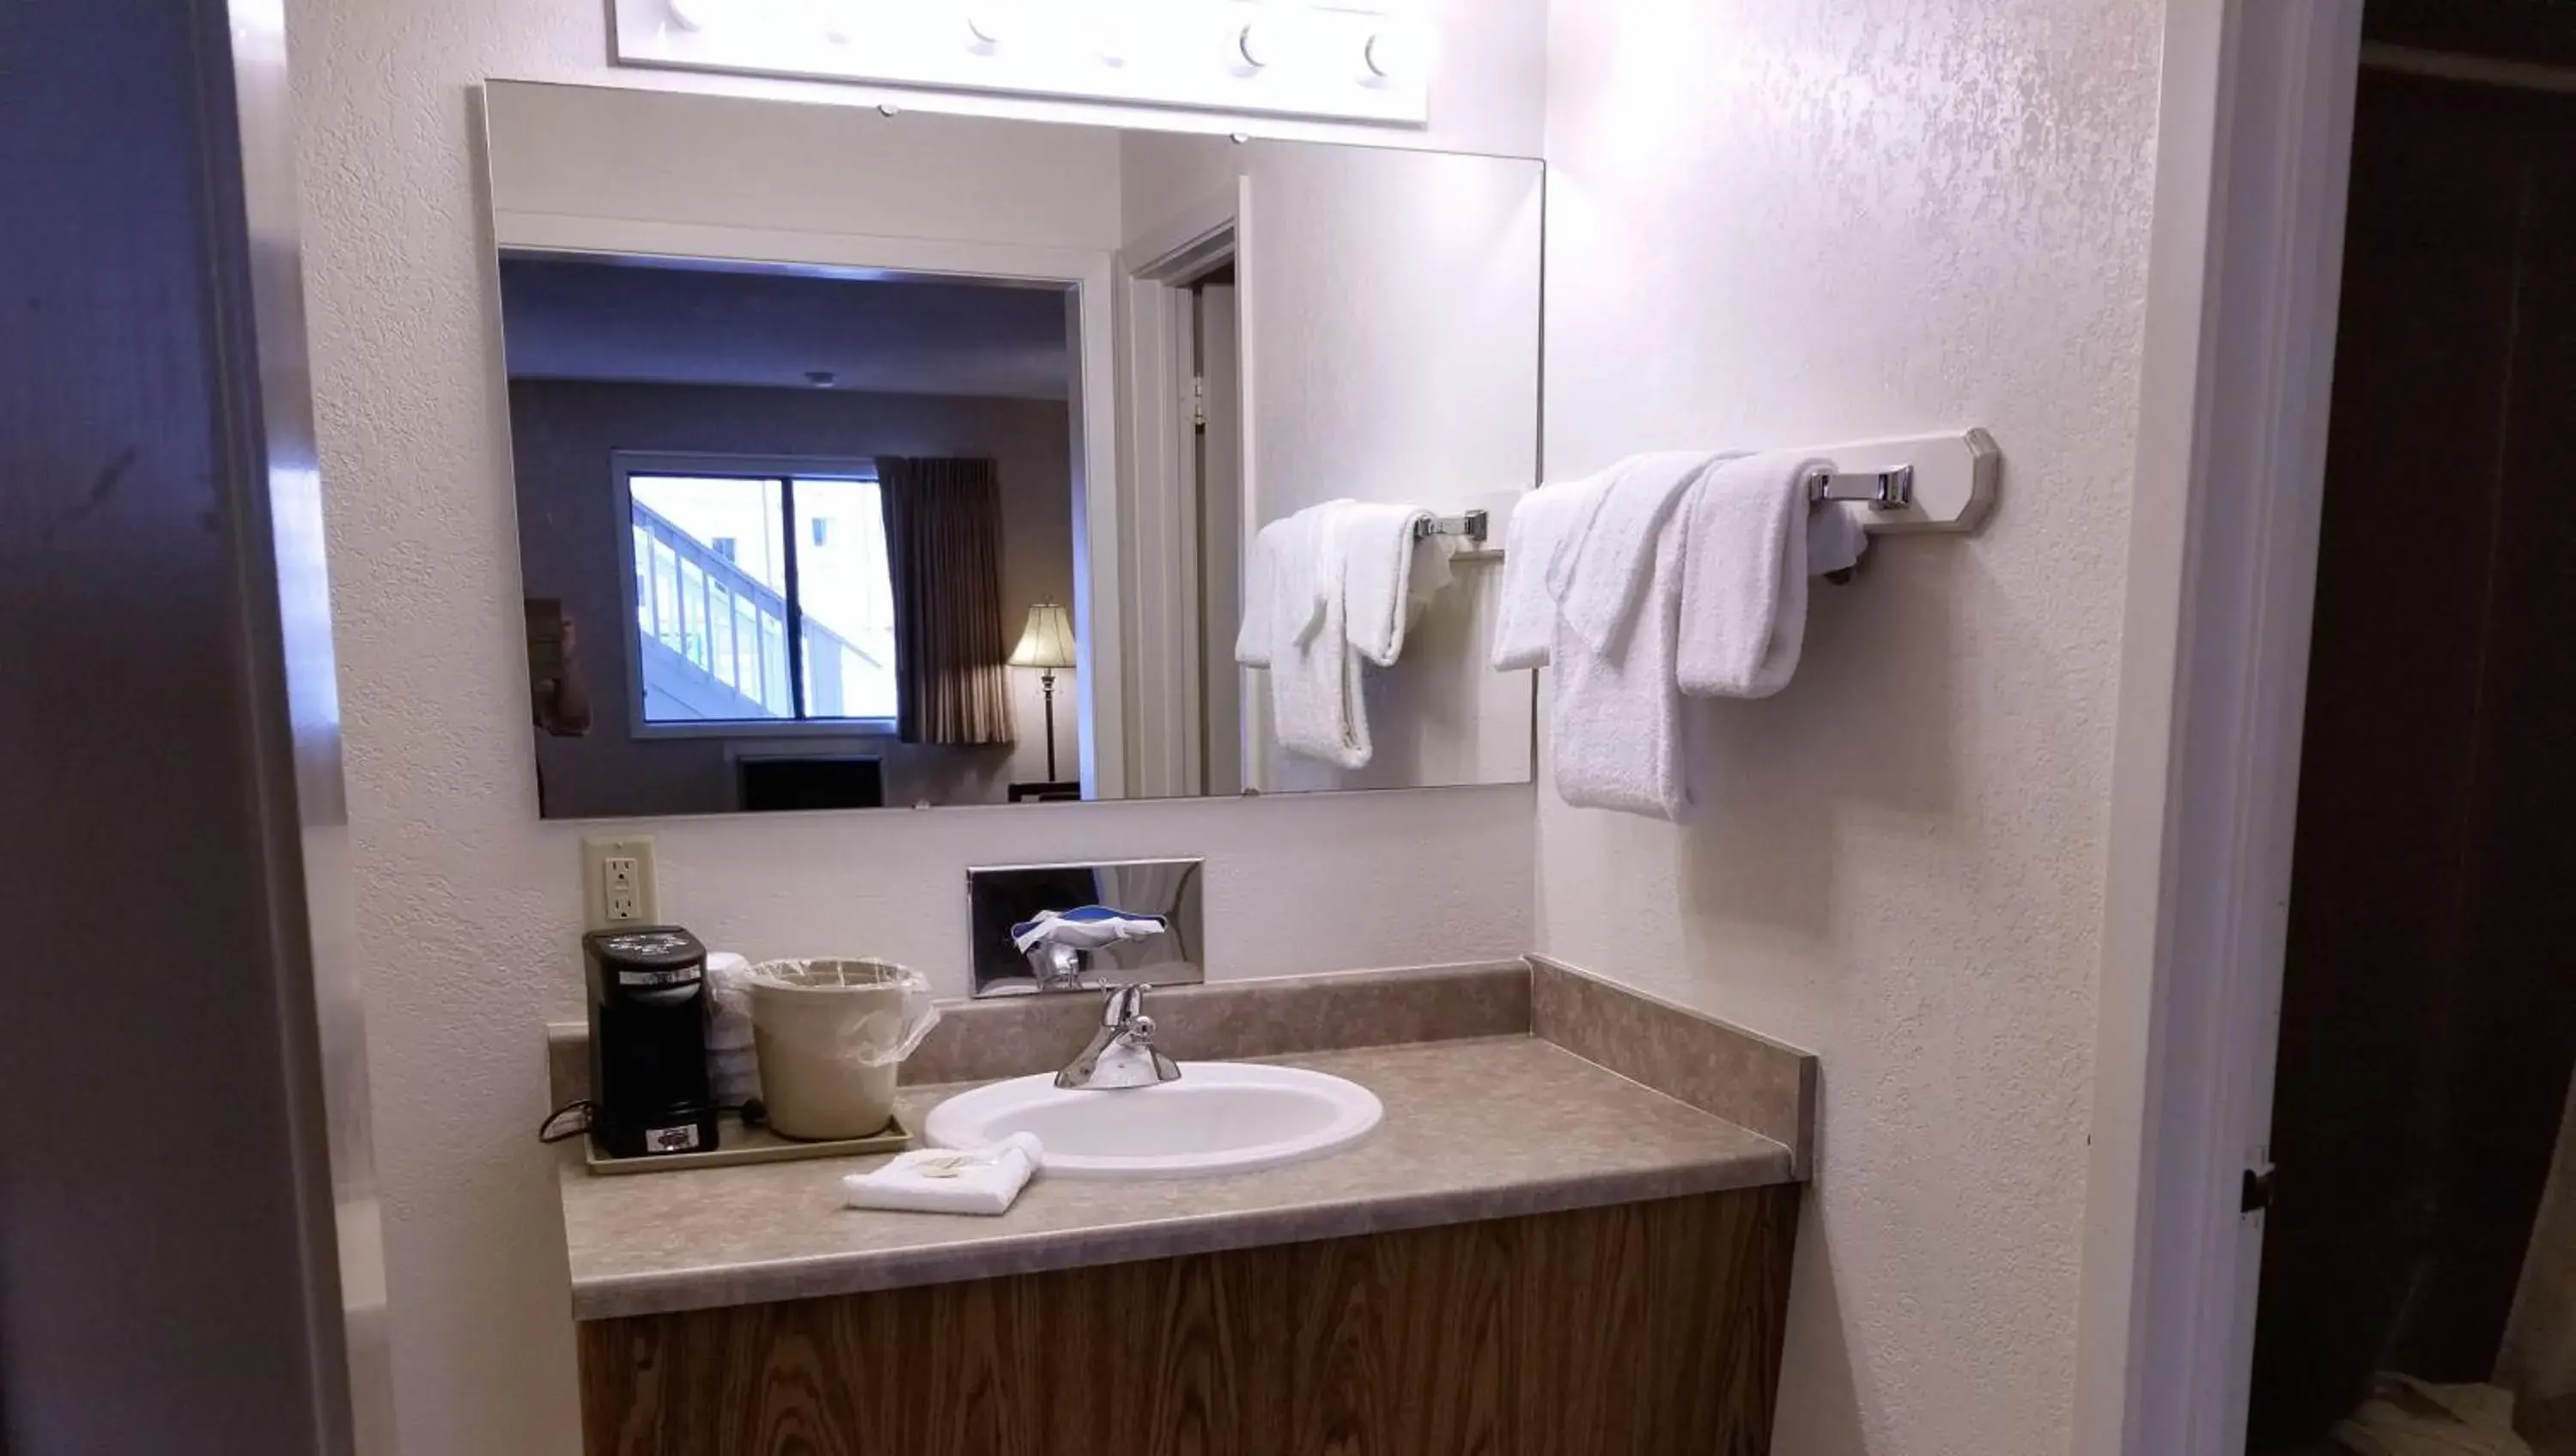 Bathroom in Keystone Boardwalk Inn and Suites By Magnuson Worldwide